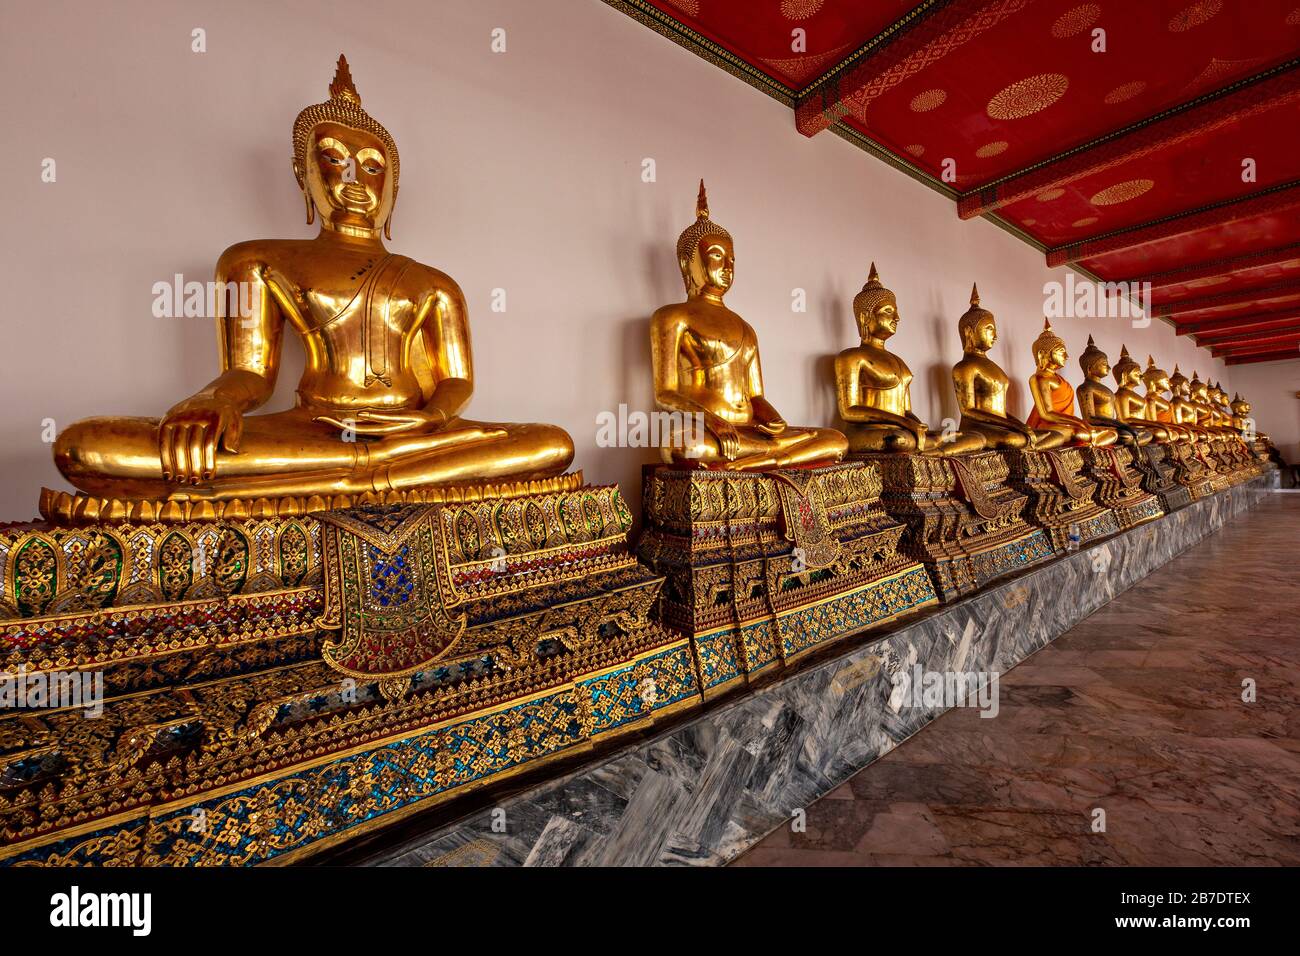 Reihe von Buddha-Statuen im buddhistischen Tempel, bekannt als Wat Pho, in Bangkok, Thailand Stockfoto